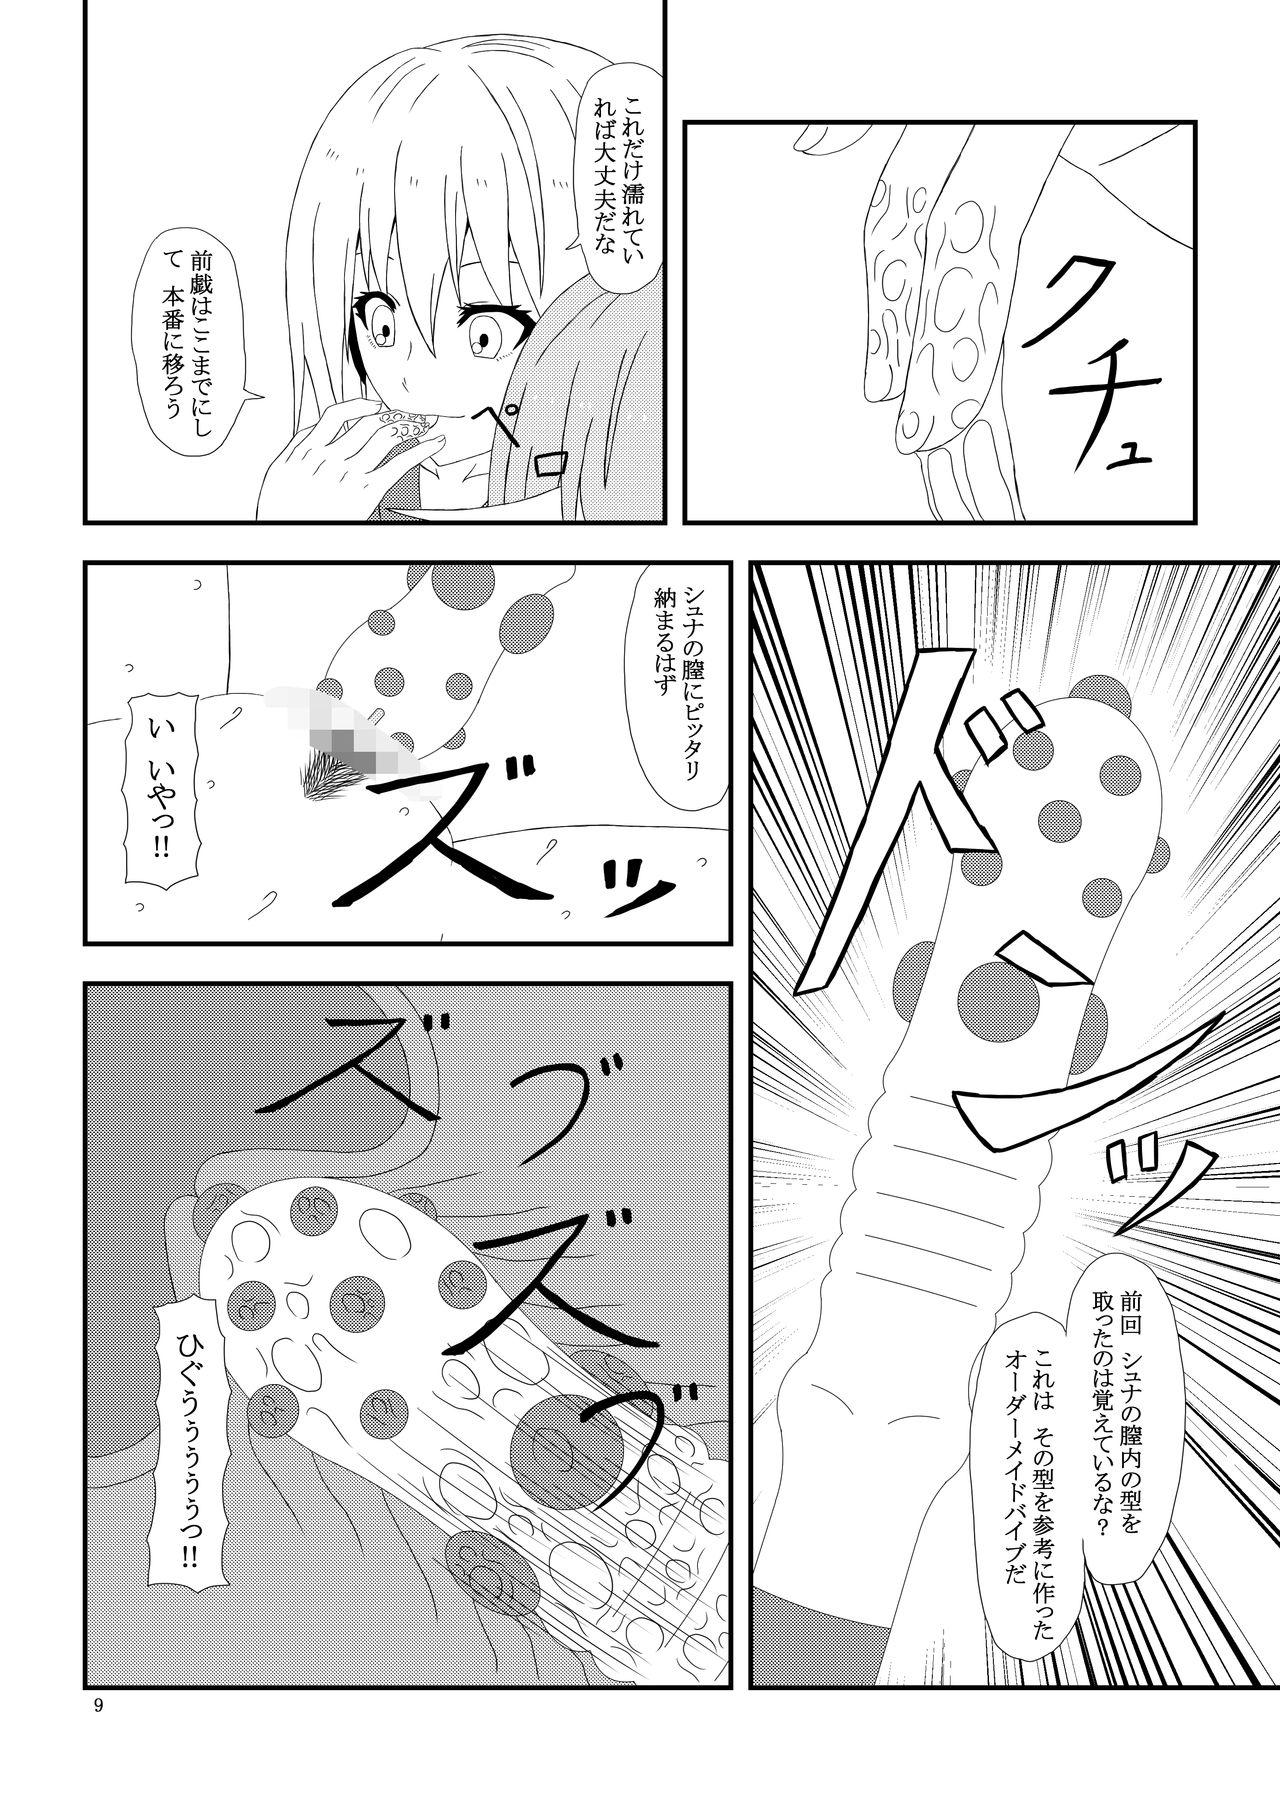 Outdoors Otona no TenSli - Tensei shitara slime datta ken Toys - Page 10